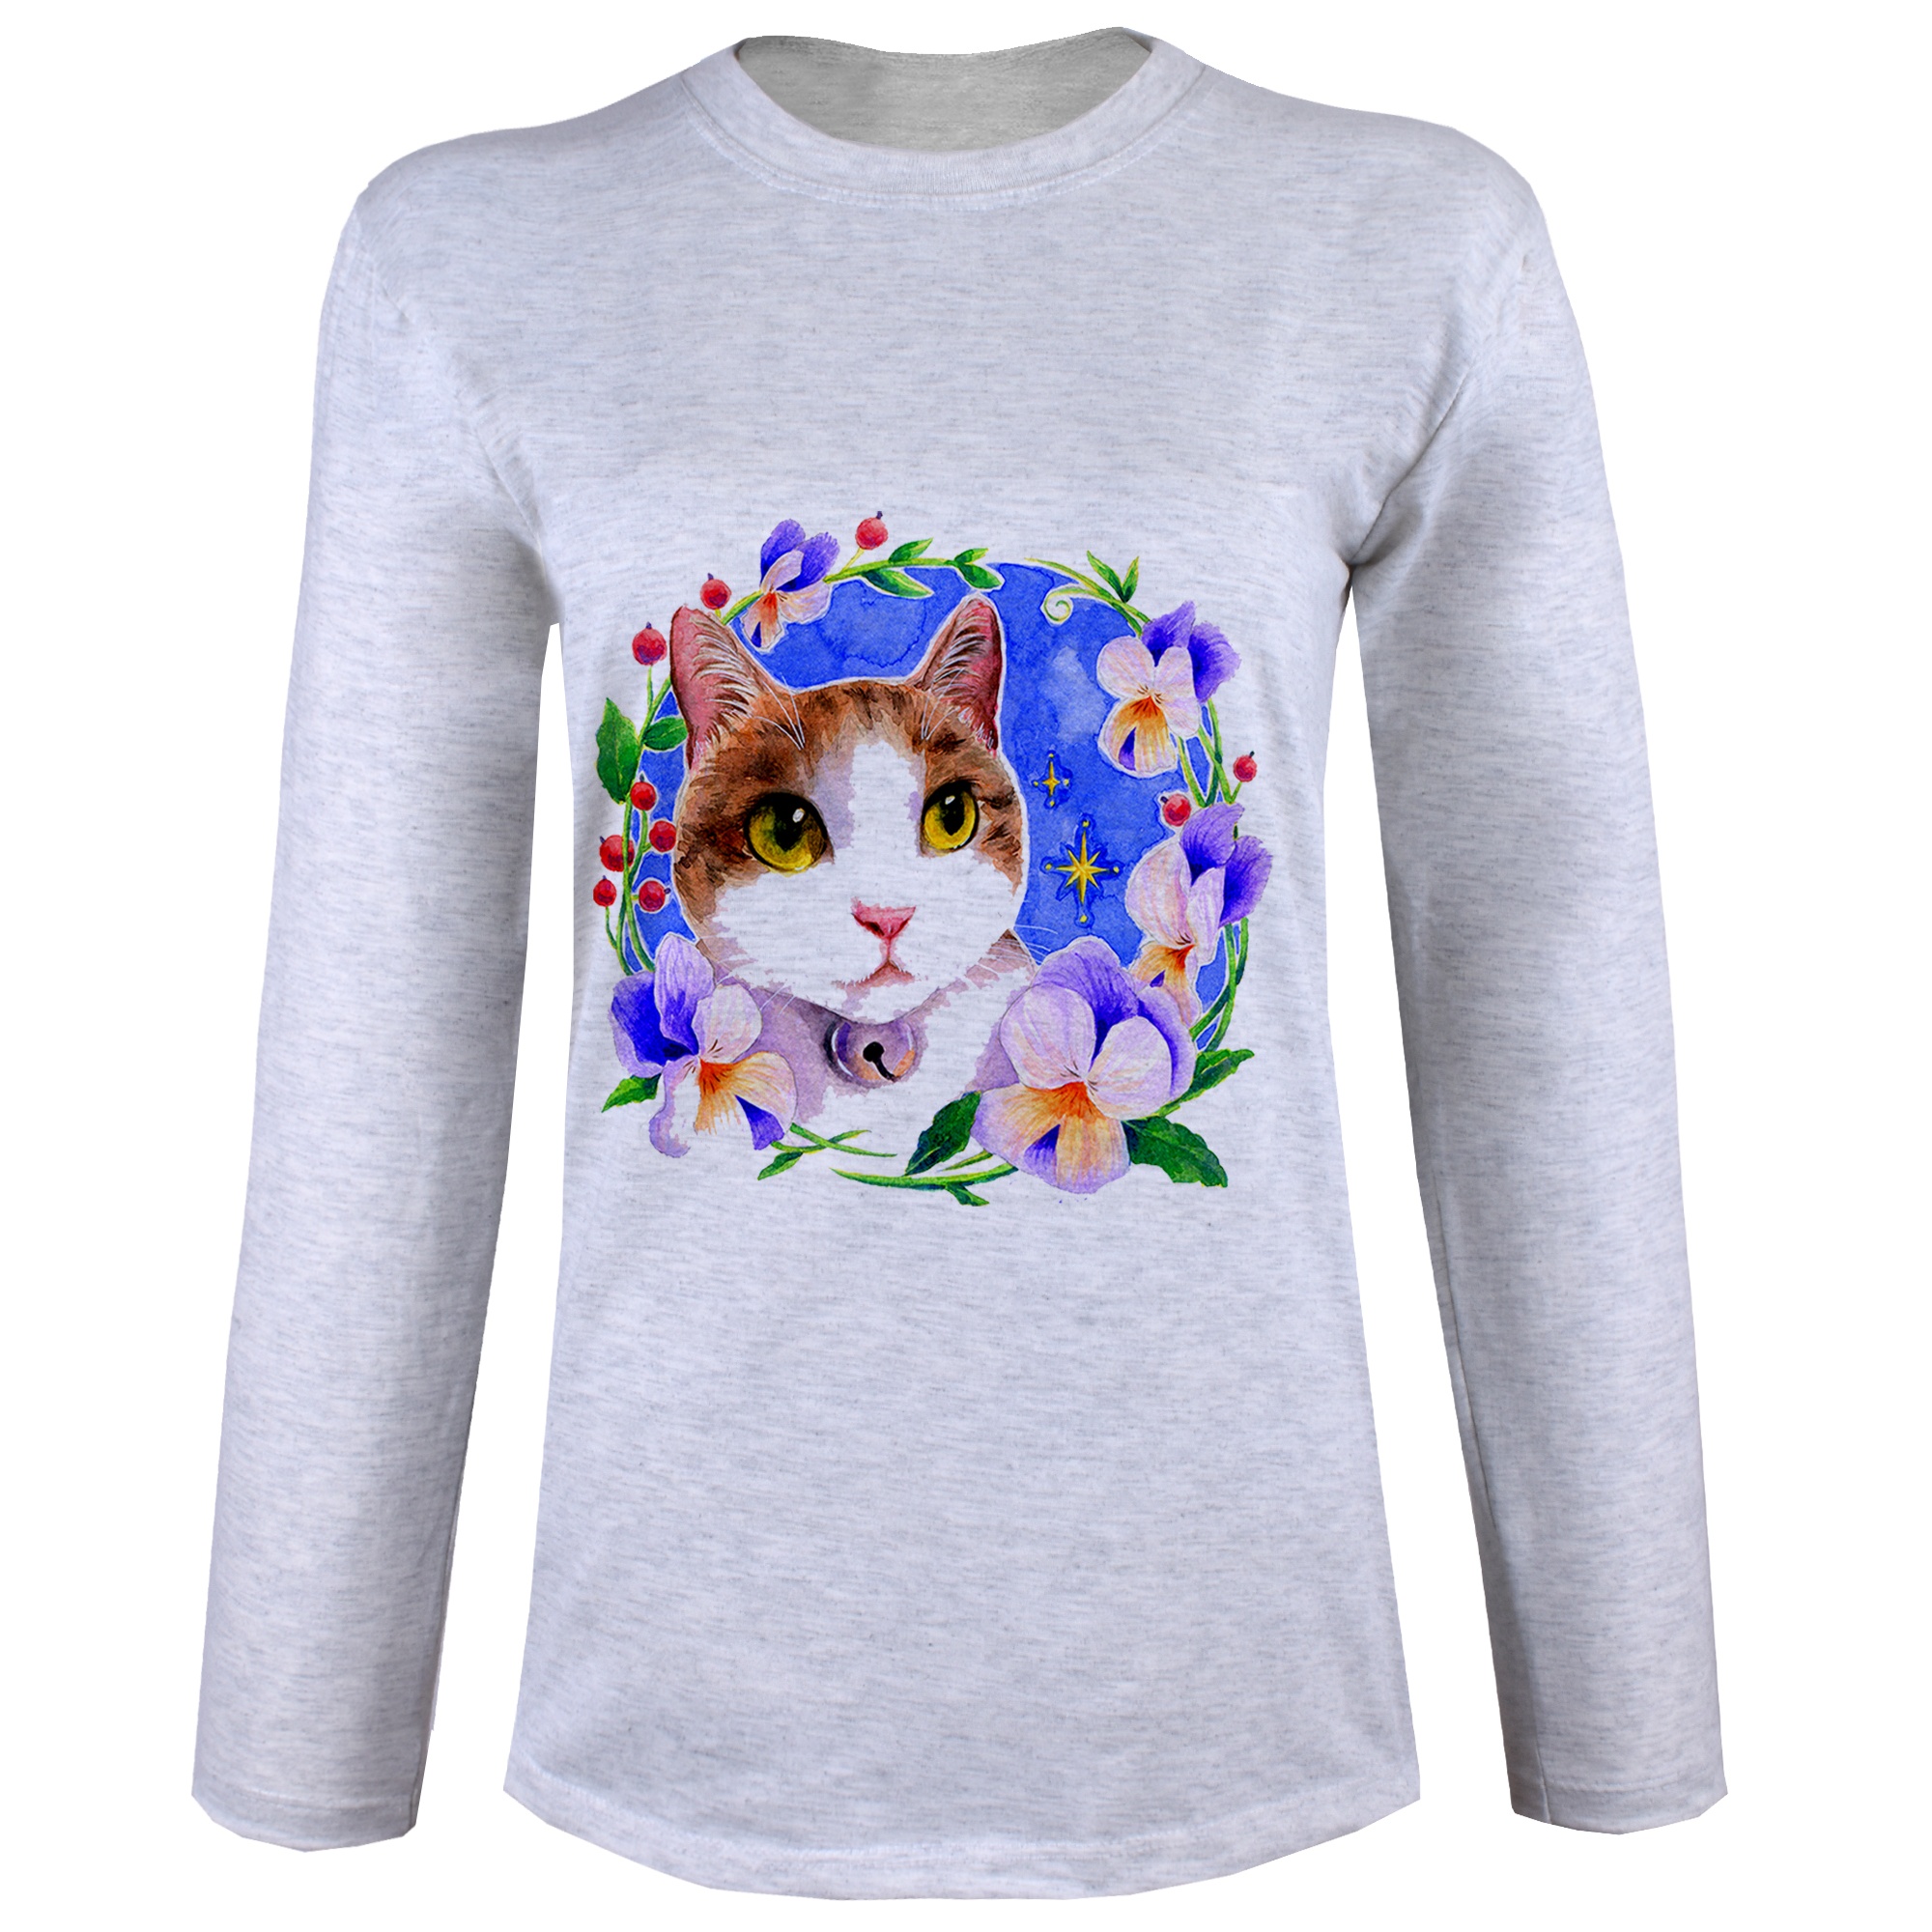 تی شرت  آستین بلند زنانه  طرح گربه و گل  کد B96